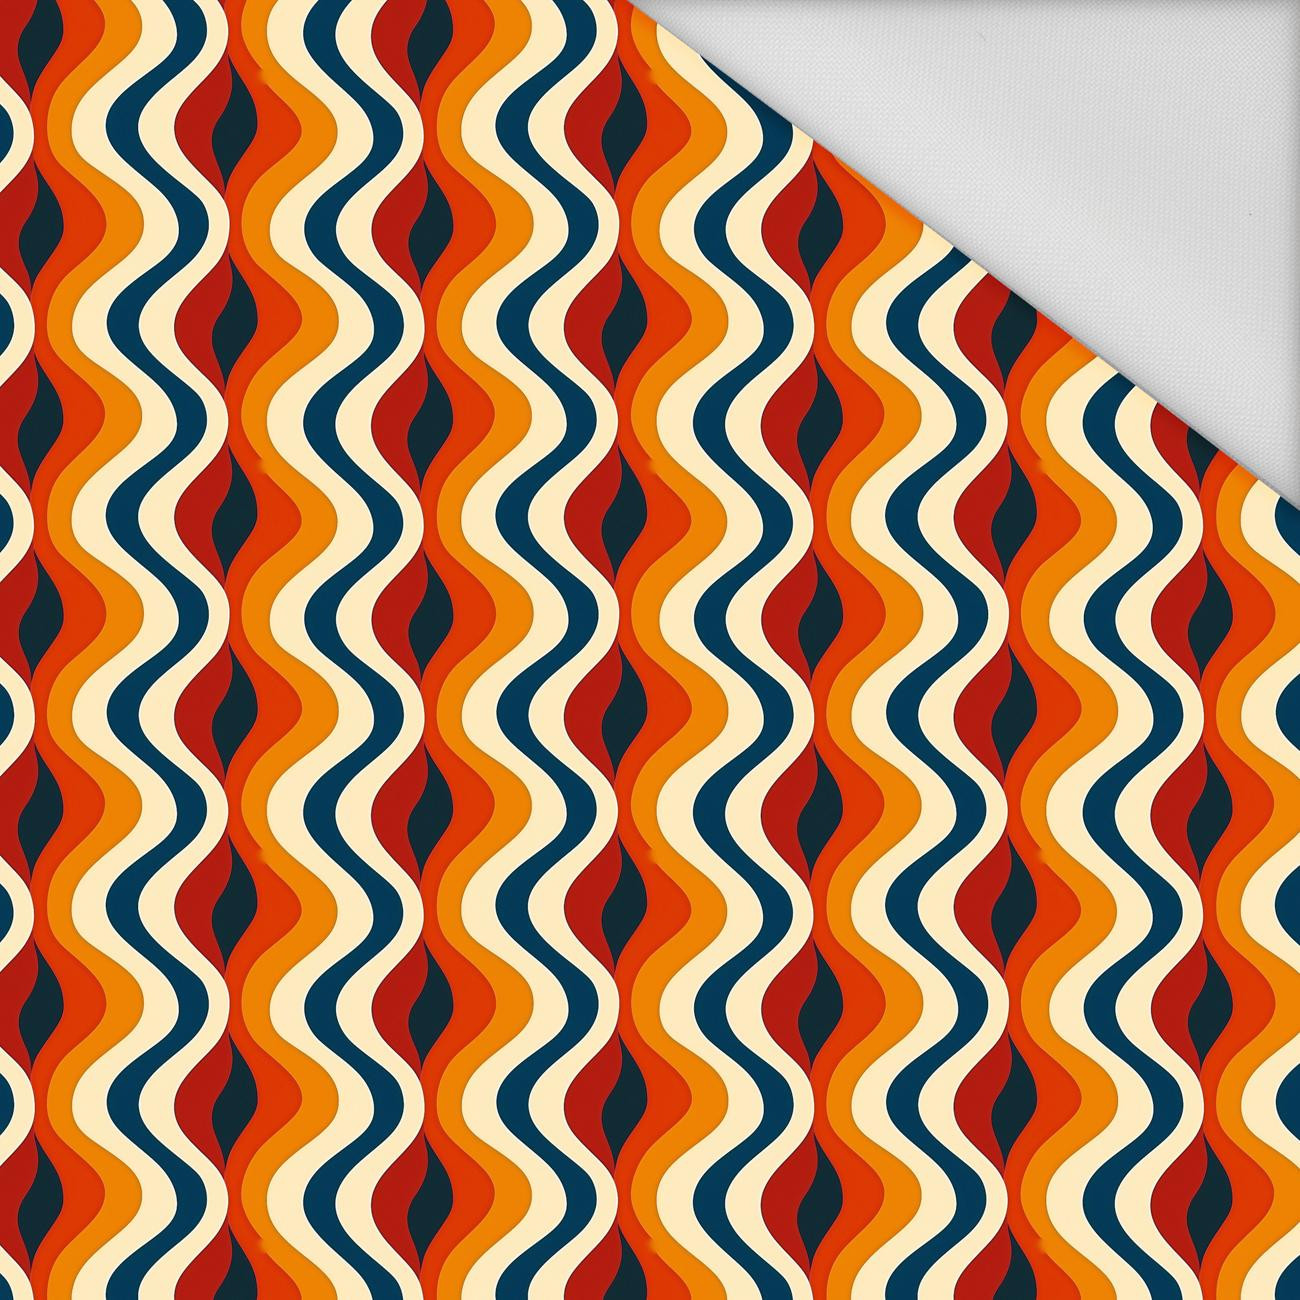 RETRO COLORS PAT. 1 - Waterproof woven fabric